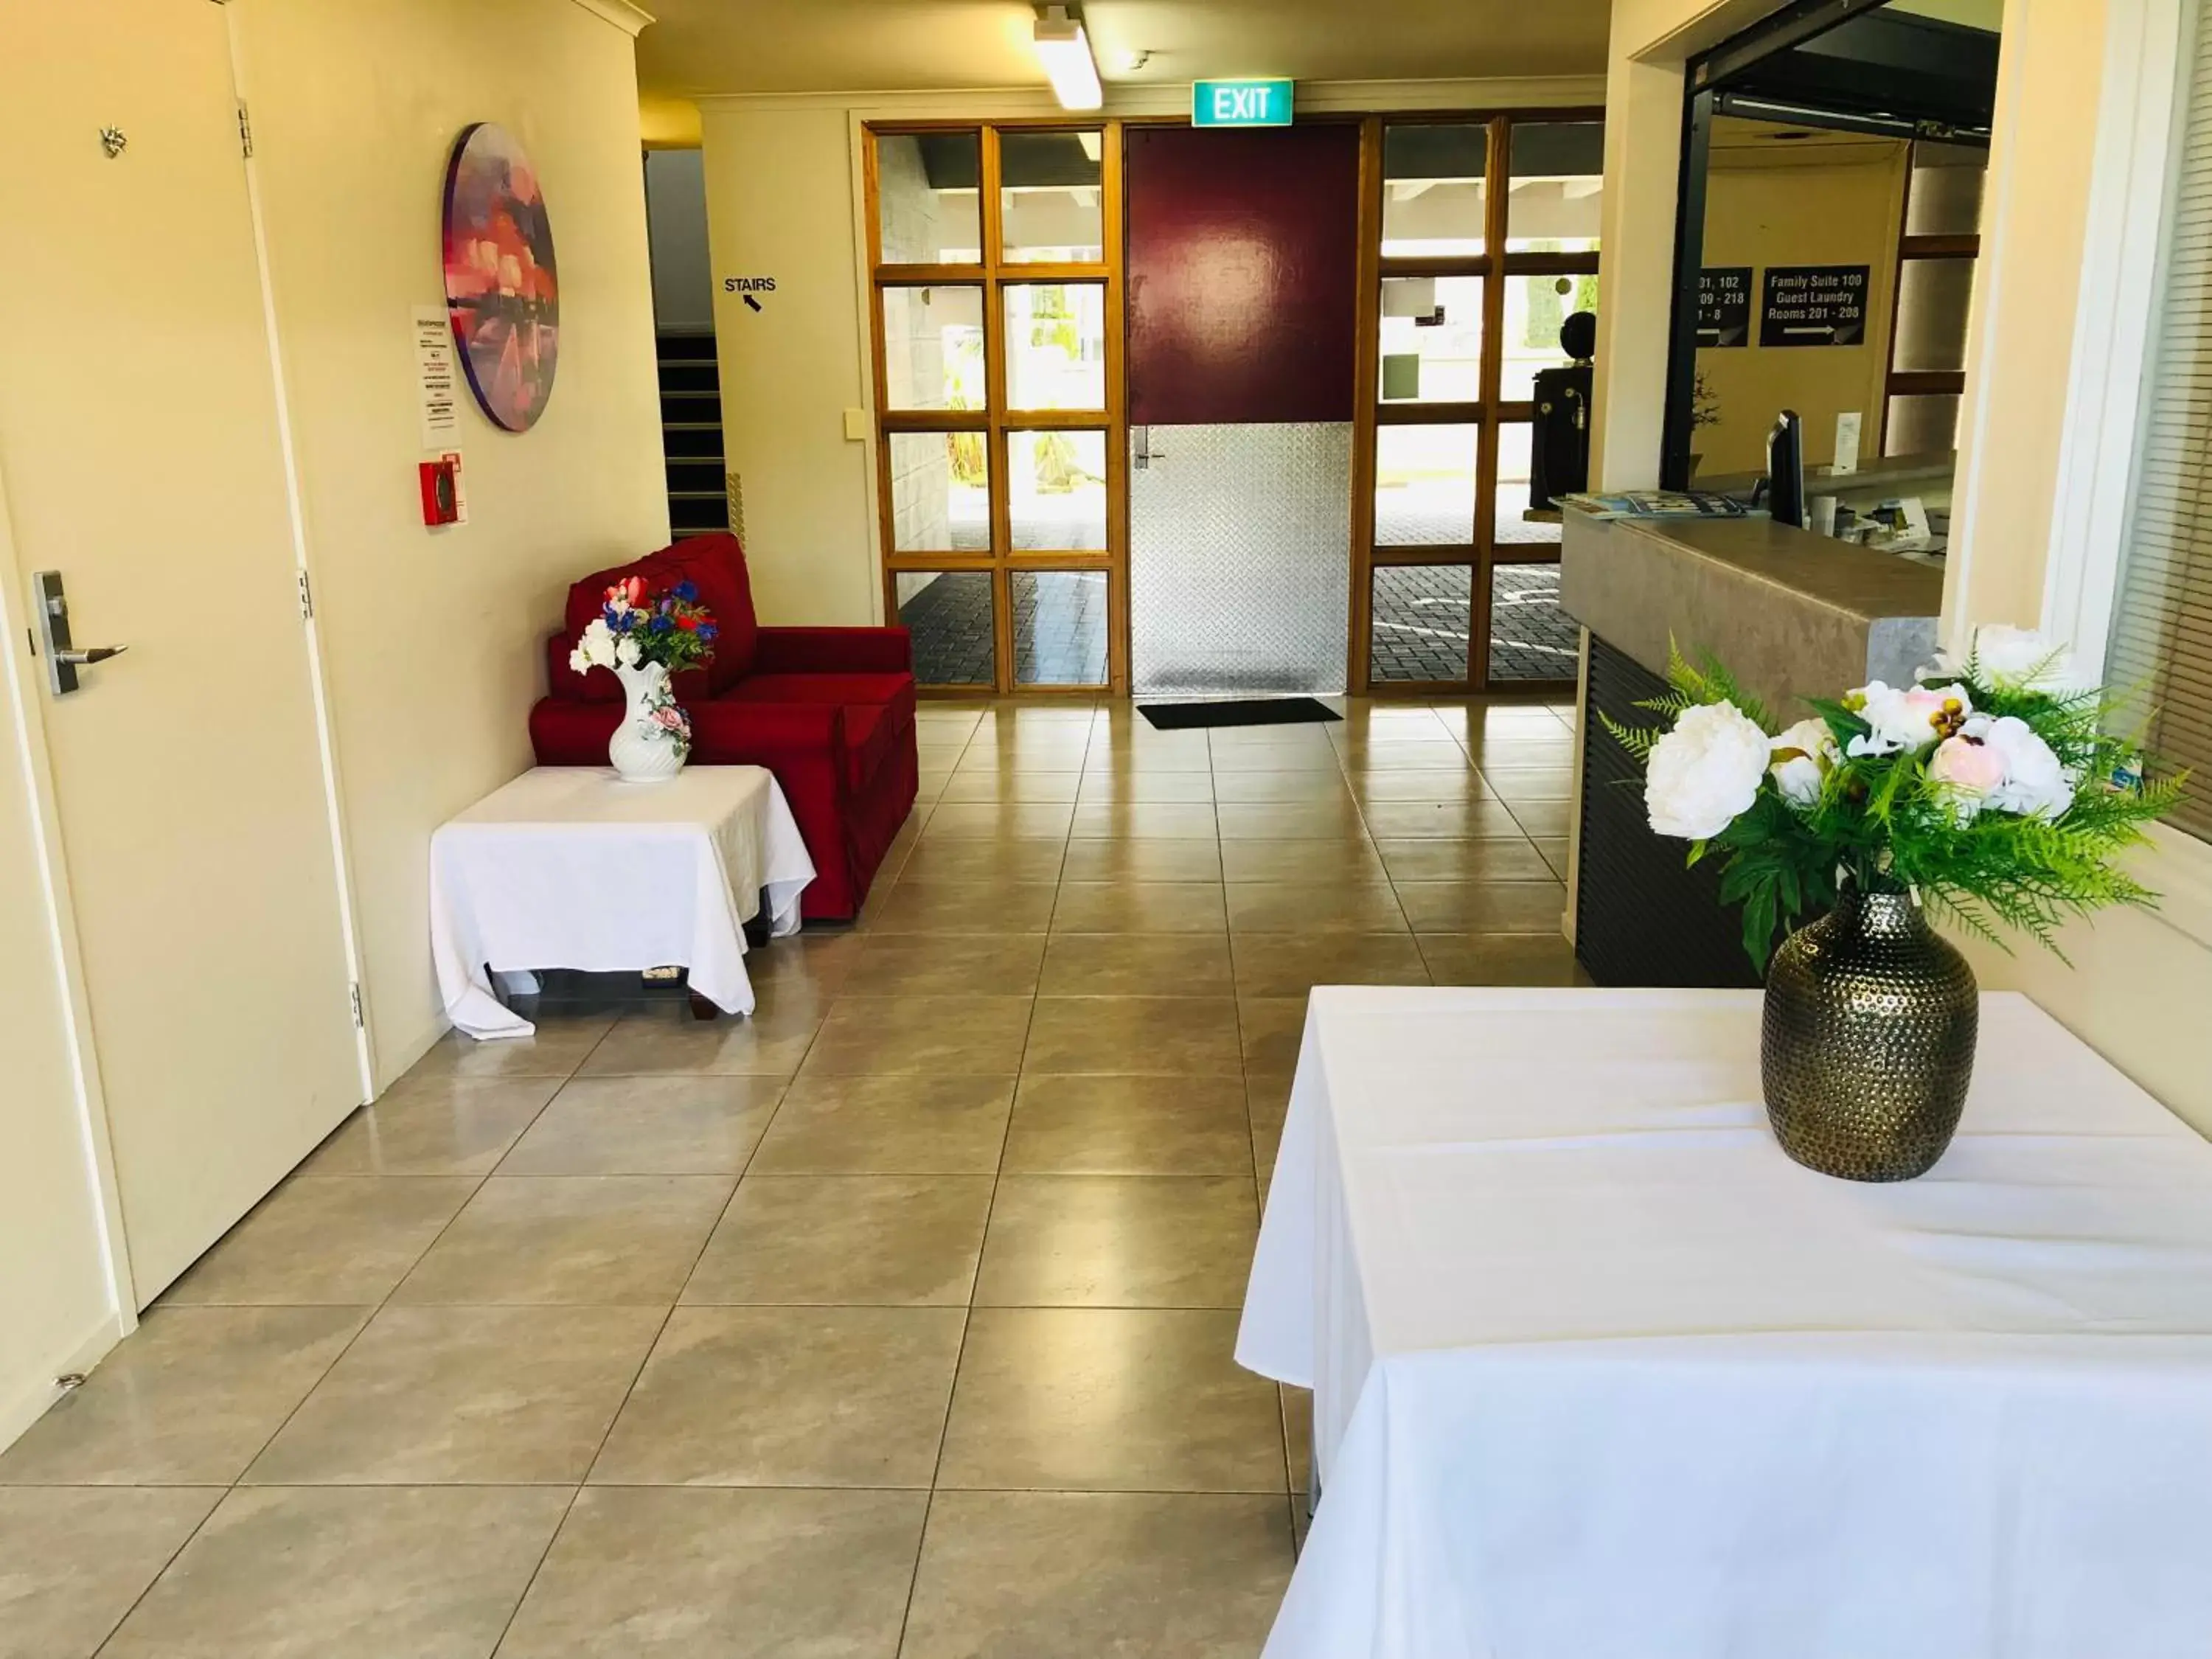 Lobby or reception in Silver Fern Lodge